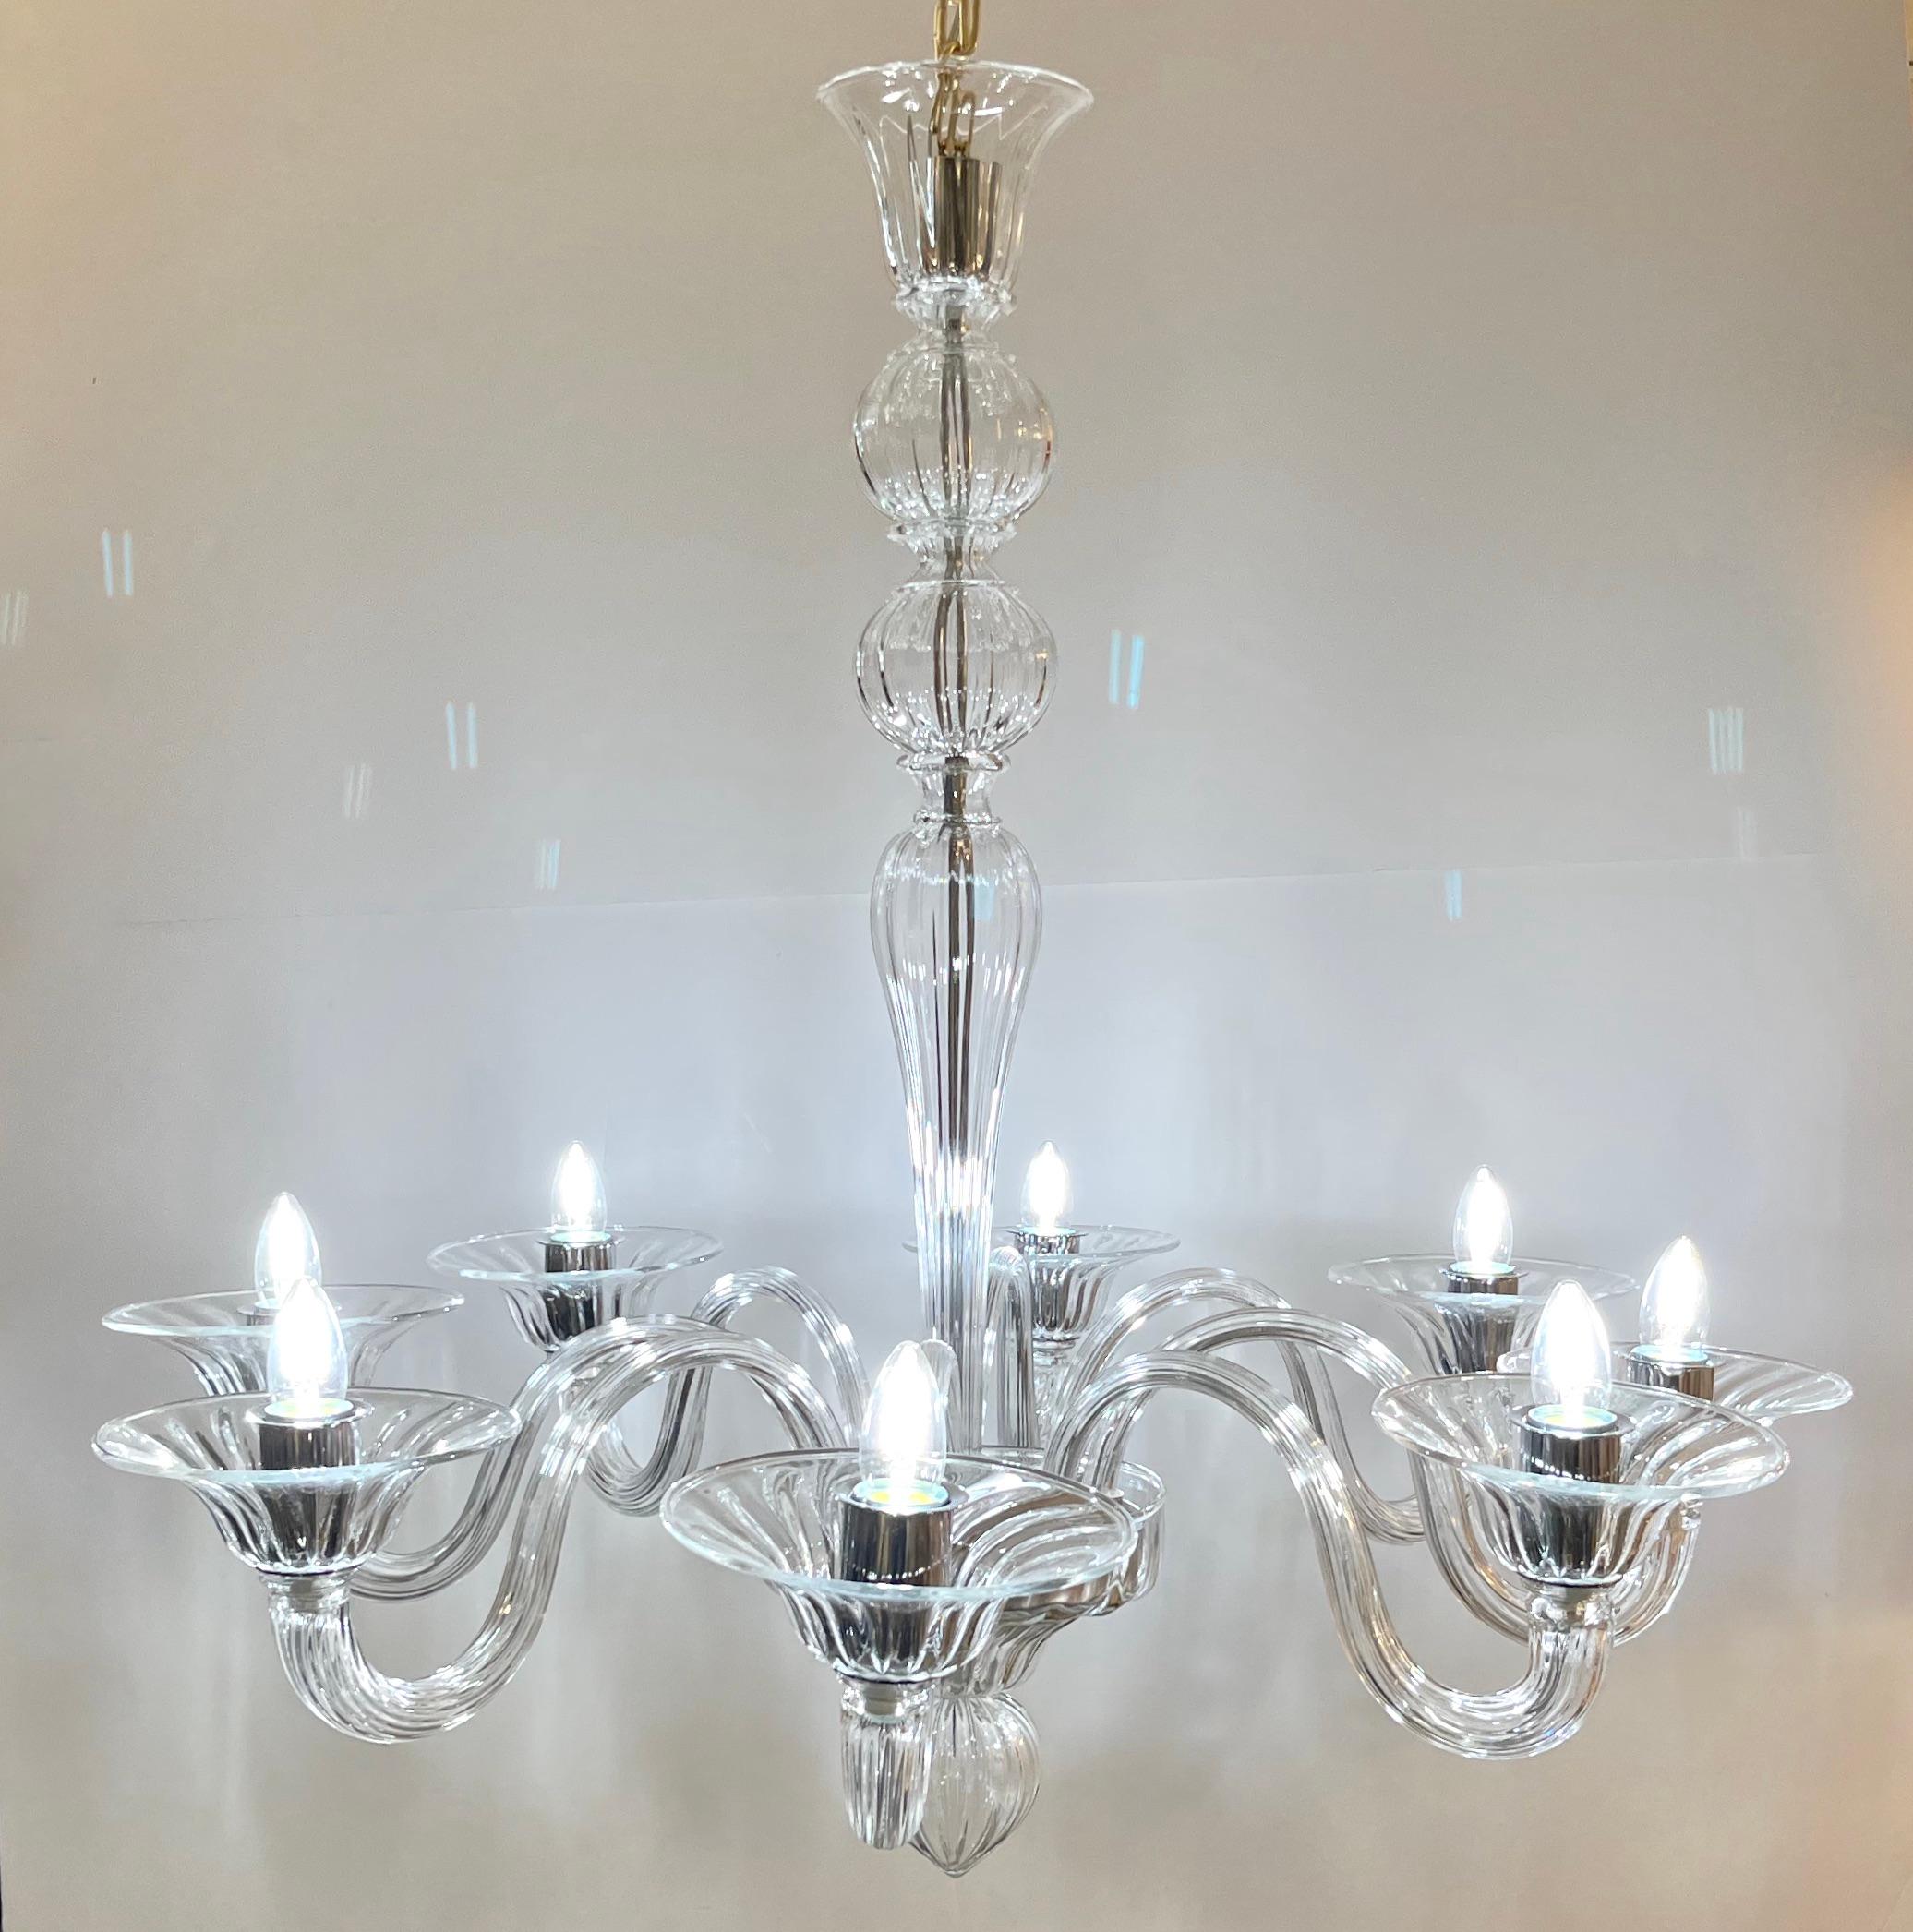 Minimalistisch-moderne Kreation des traditionellen venezianischen Kronleuchters mit 8 Lichtern aus kunstvoll geblasenem Murano-Kristallglas, vollständig in Italien handgefertigt.
Diese Leuchte aus Murano-Glas zeichnet sich durch eine großartige,